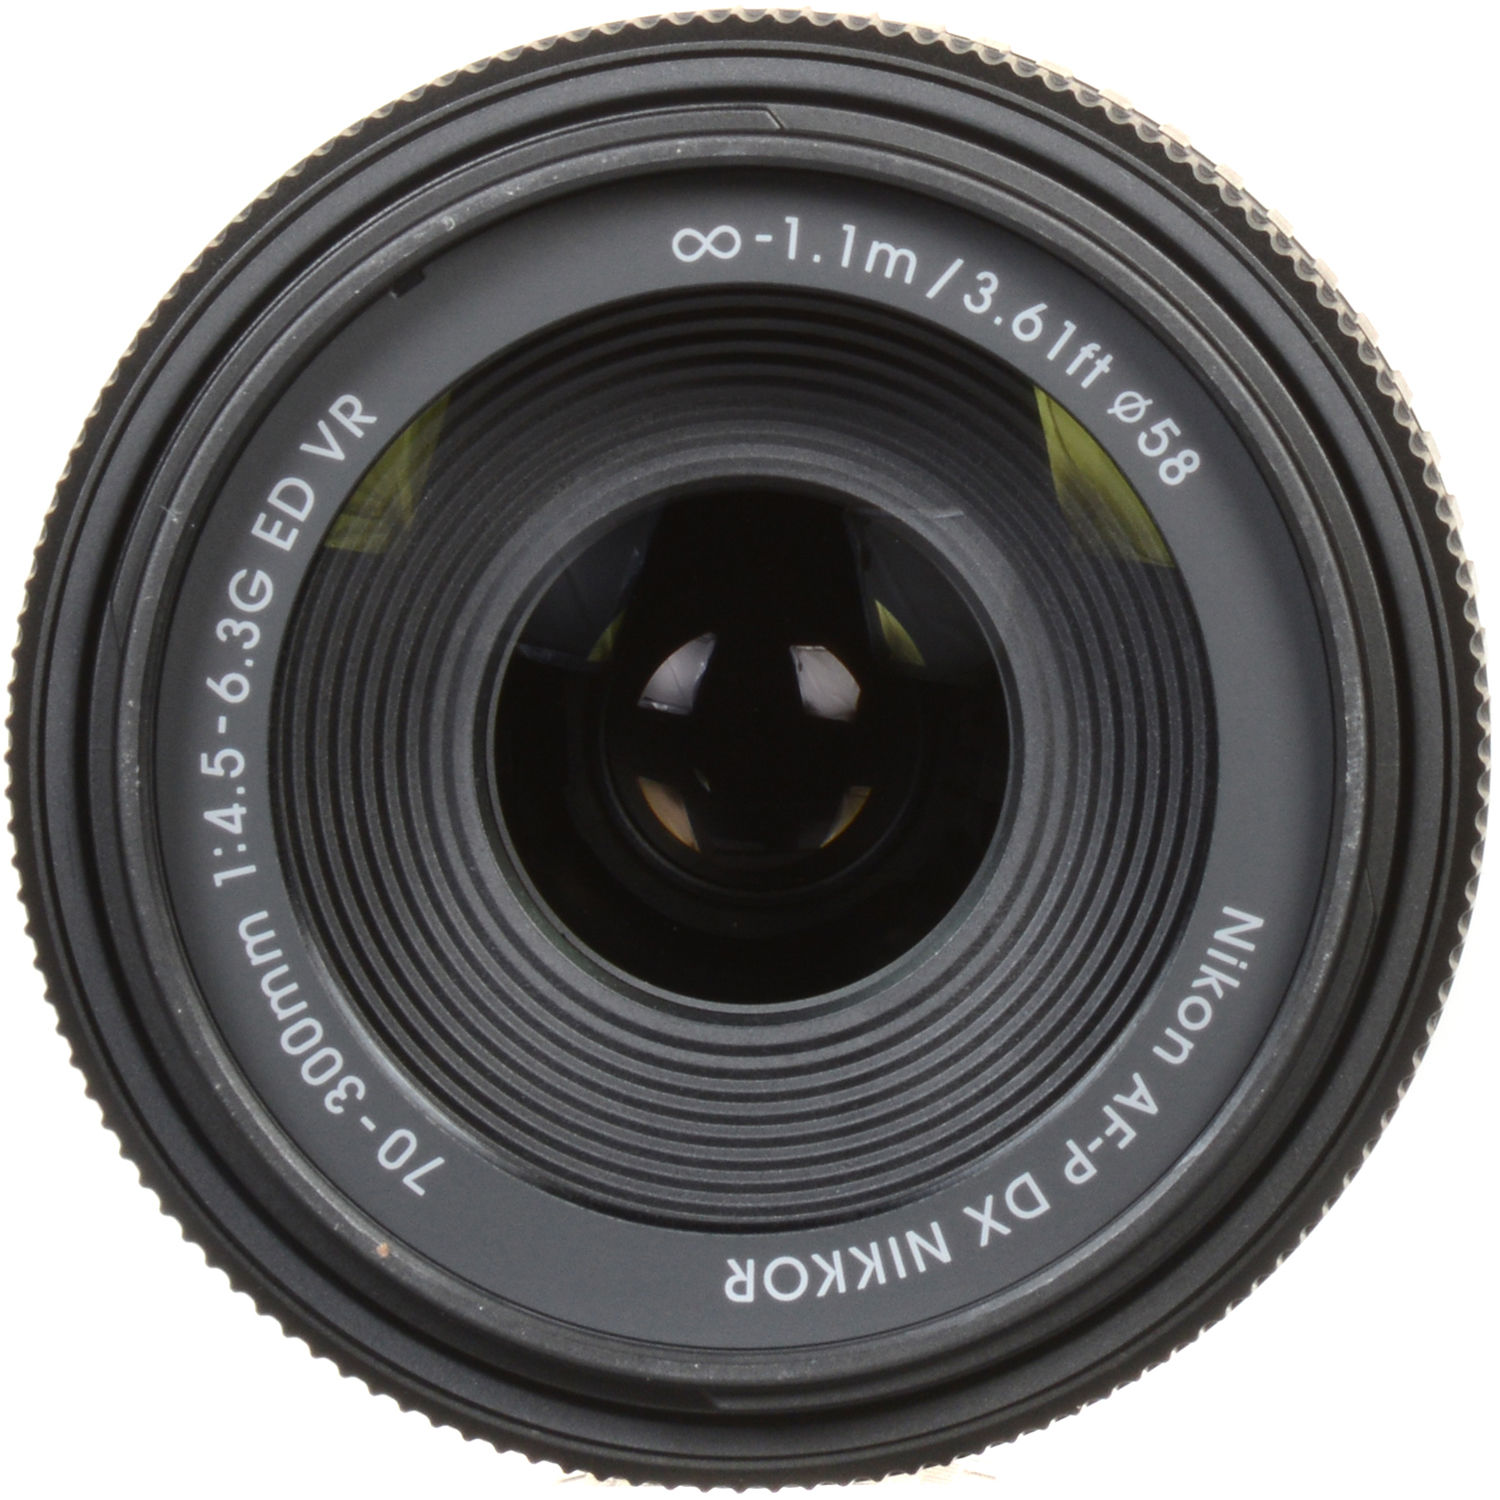 Nikon Af P Dx Nikkor 70 300mm F 4 5 6 3g Ed Vr Lens 062 B H